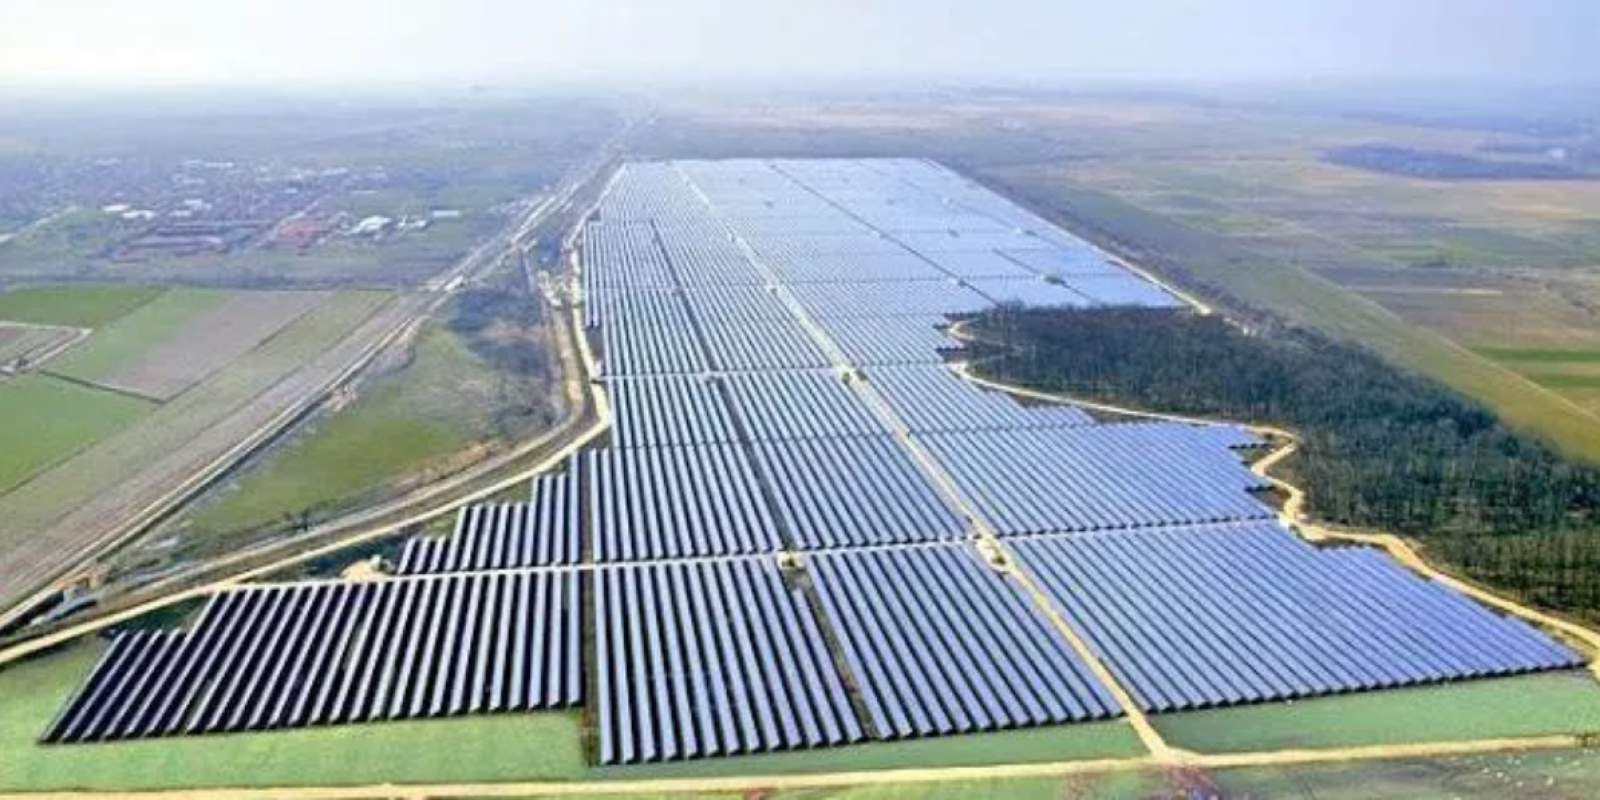 Piauí Instala A Maior Usina De Energia Fotovoltaica Da América Latina